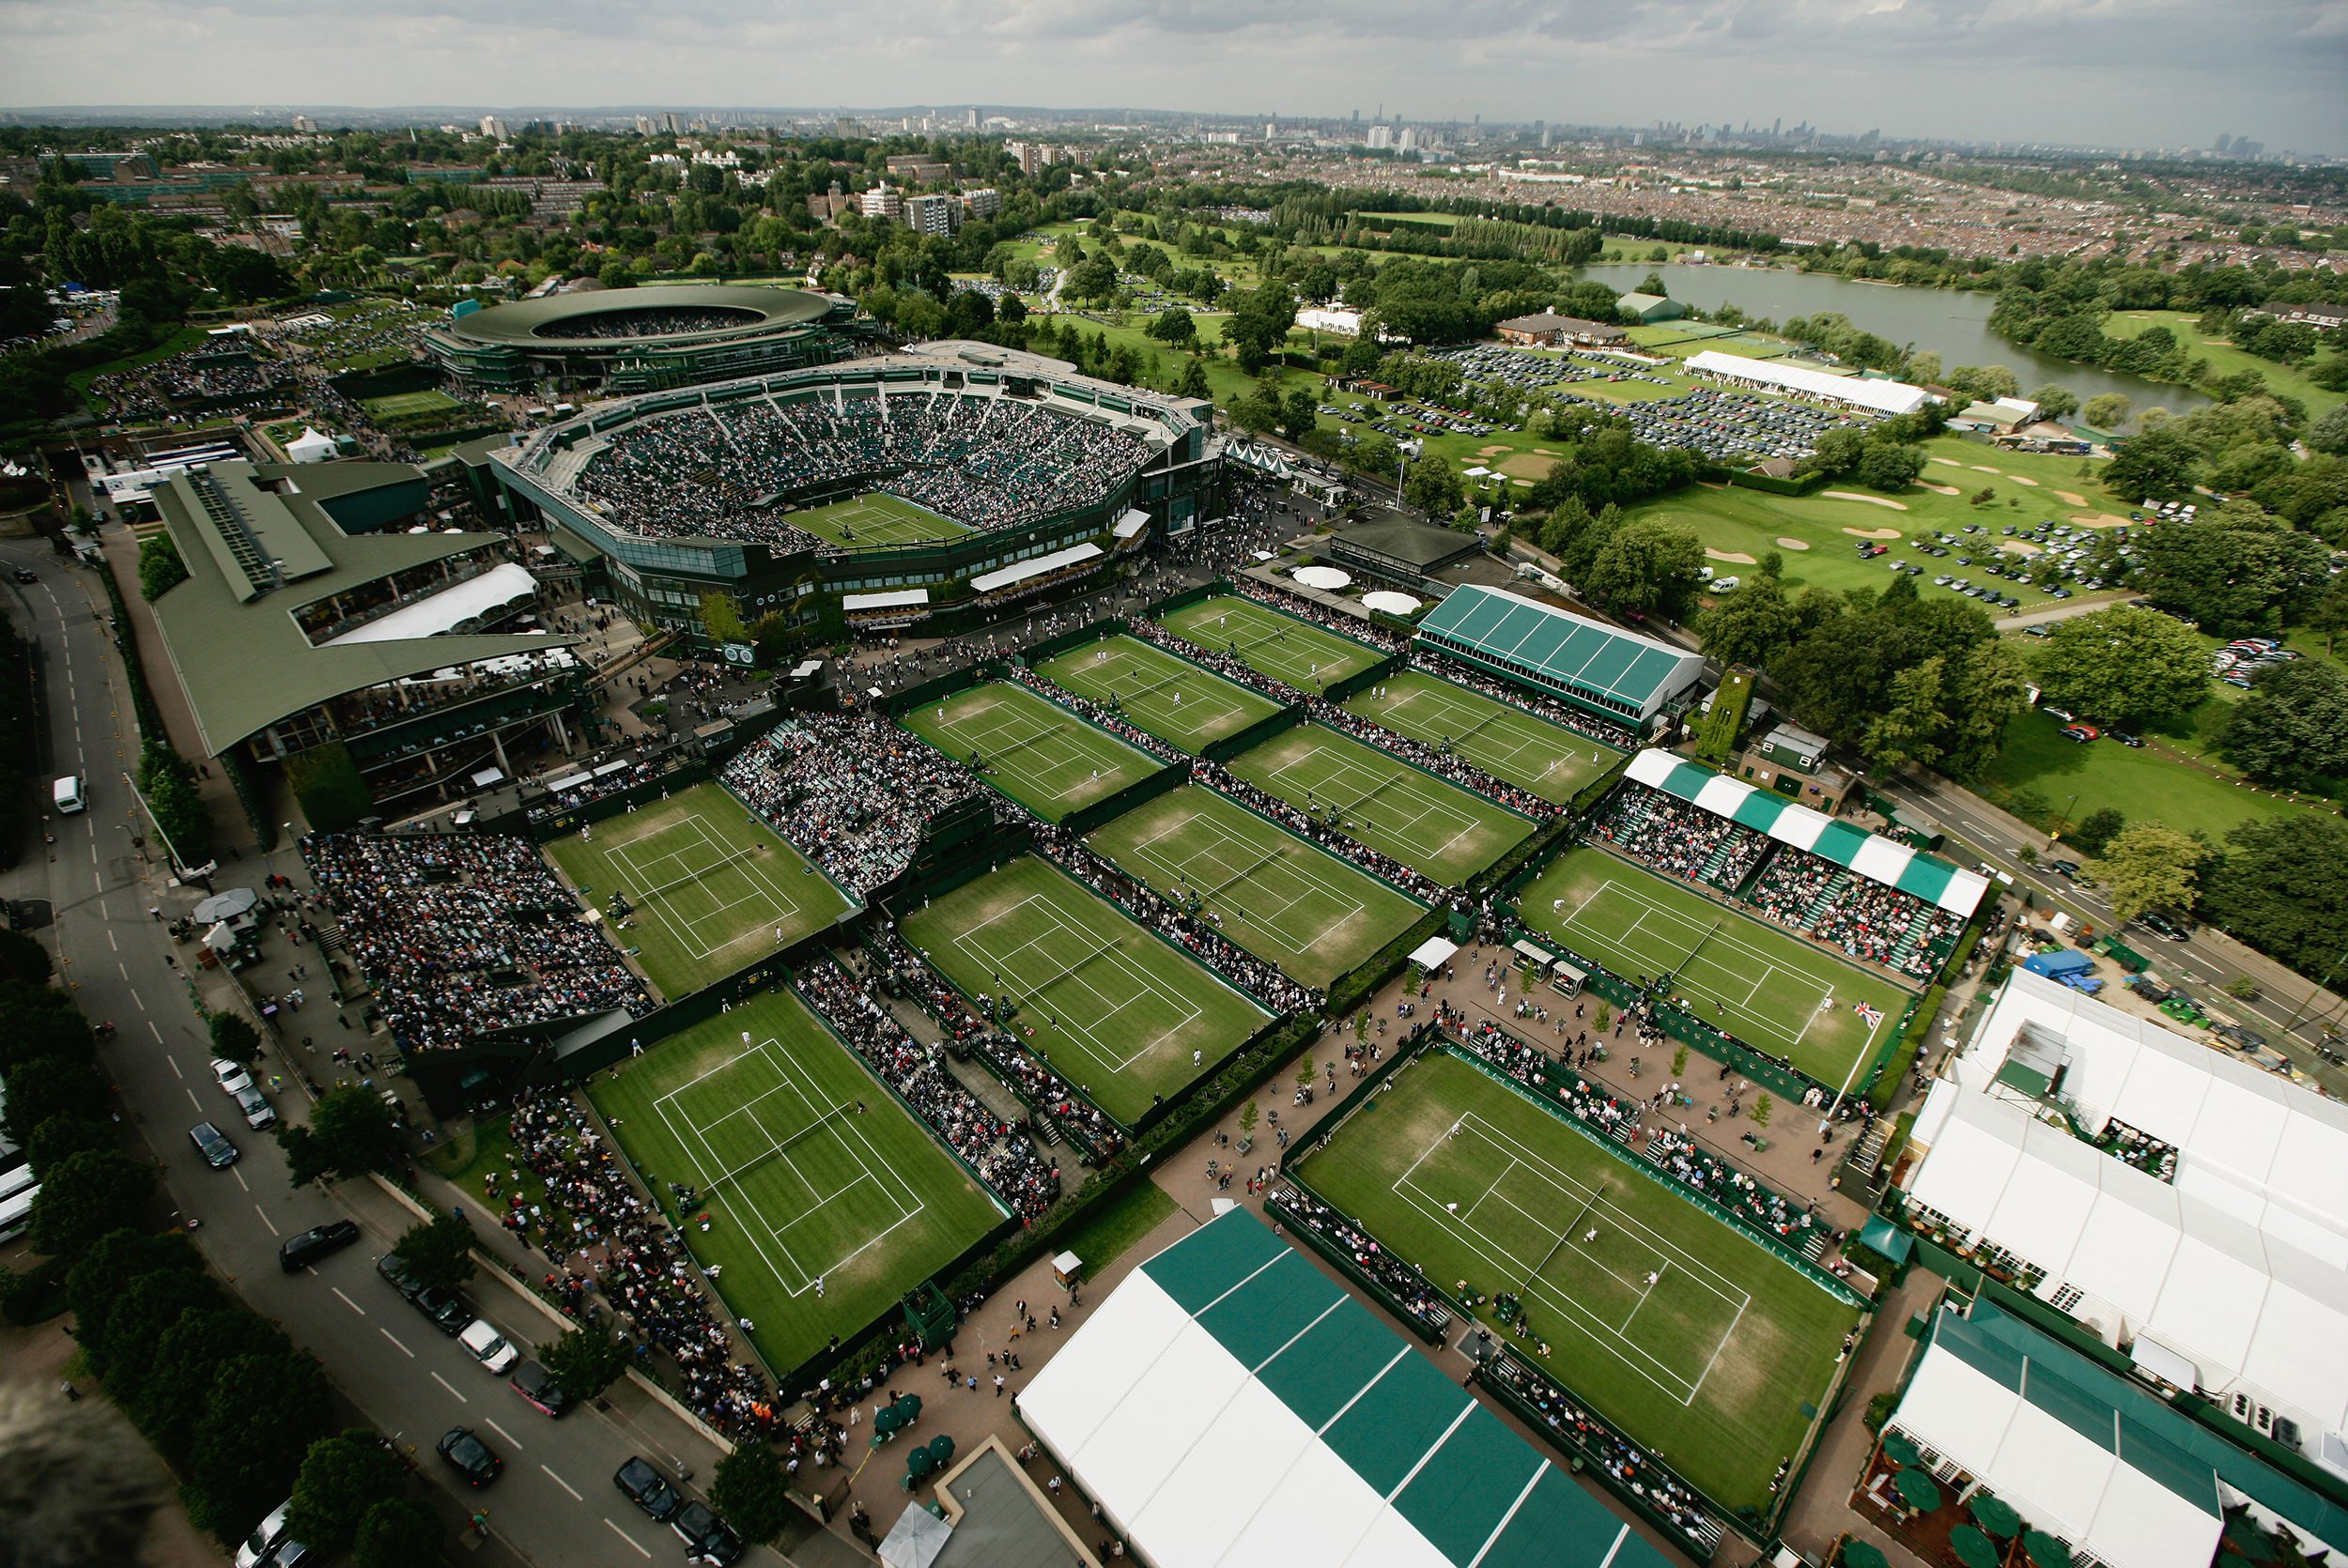 Wimbledon Park